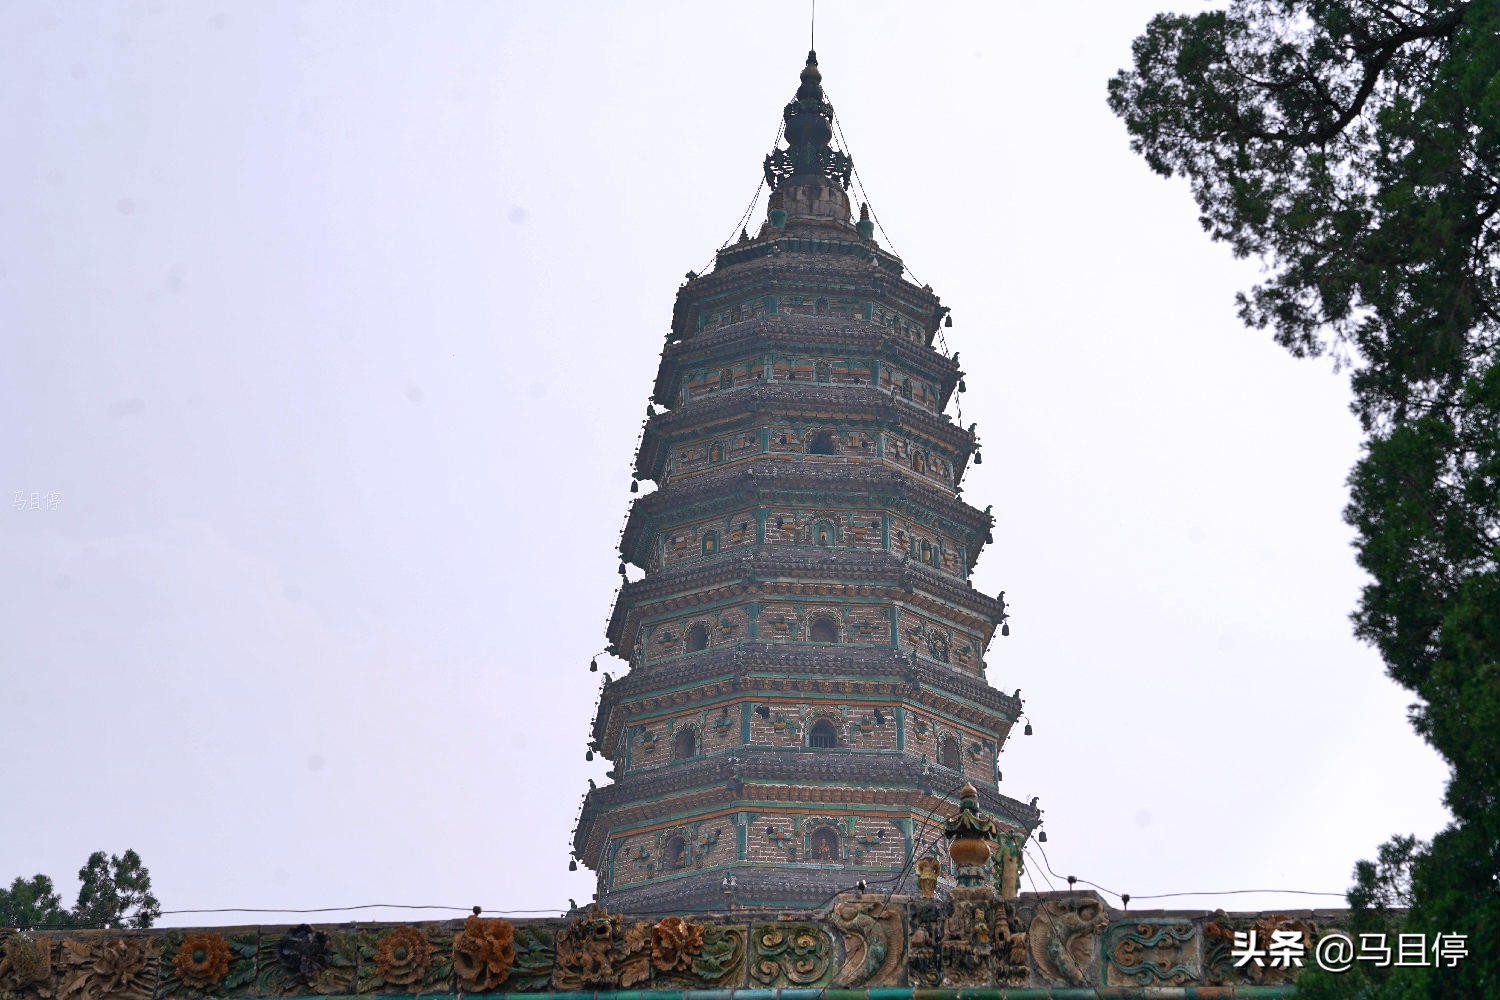 太罕见了!山西小县城旅行发现中国第一琉璃塔,设计者还是一位和尚